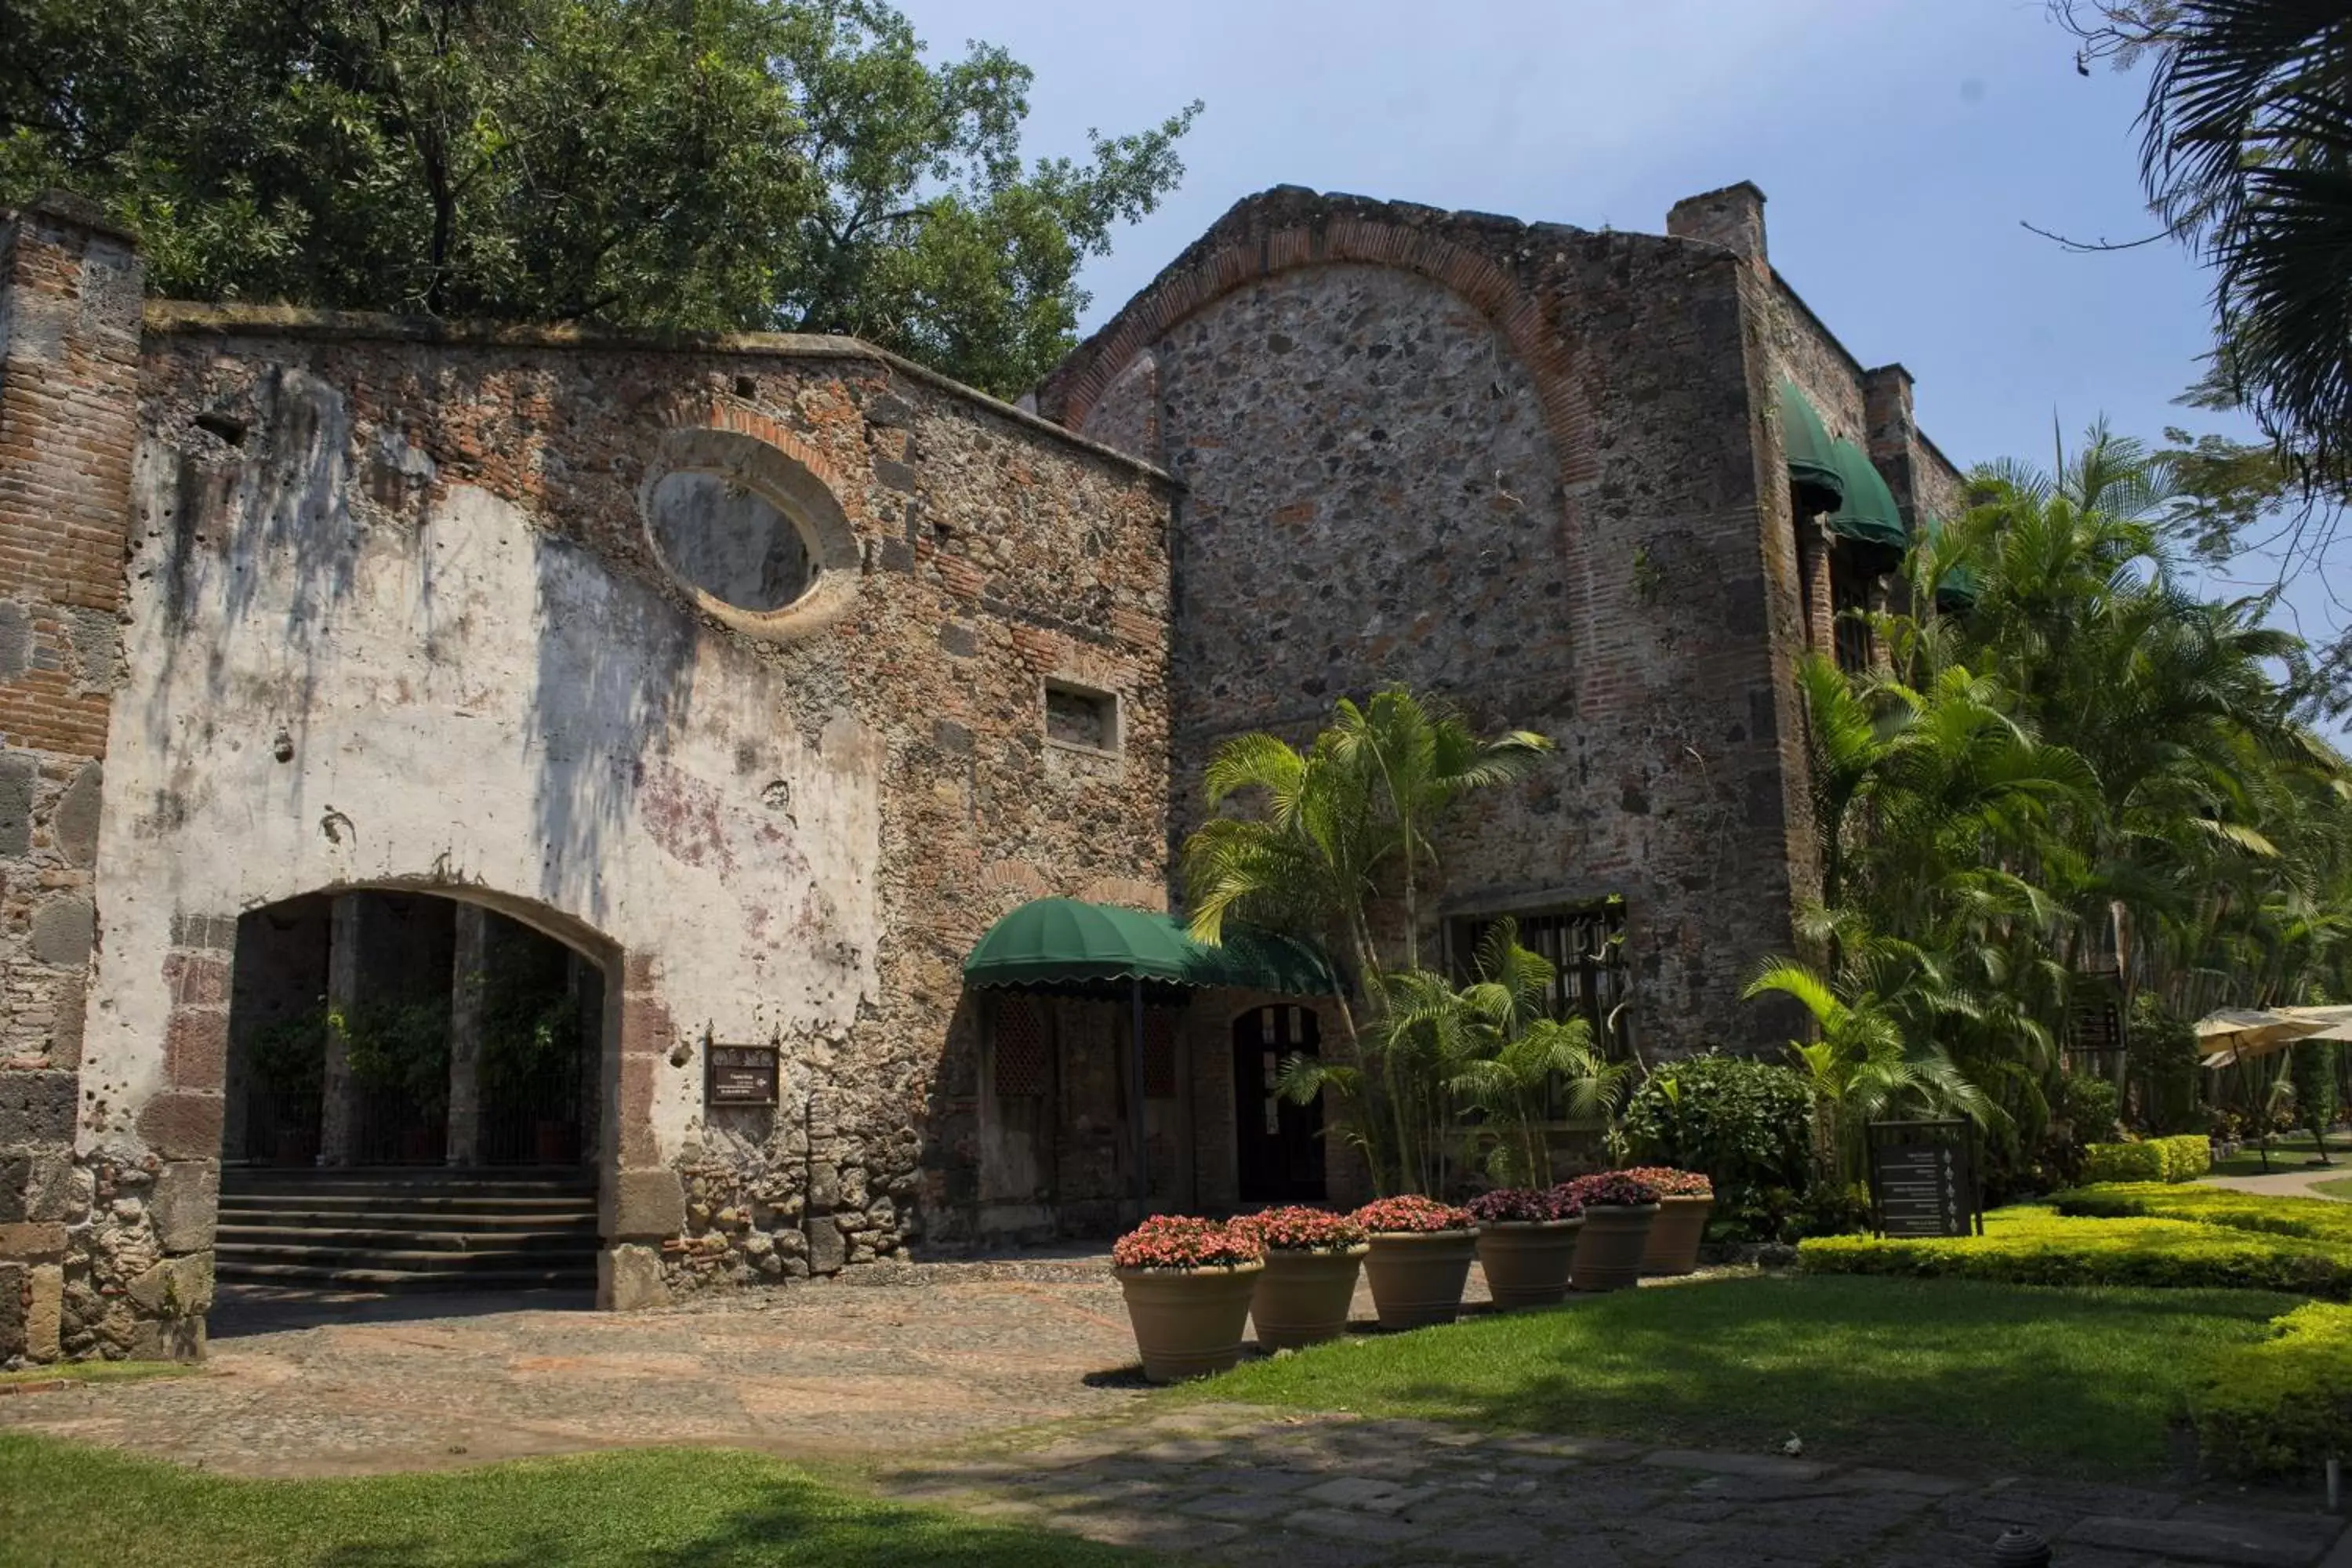 Property Building in Fiesta Americana Hacienda San Antonio El Puente Cuernavaca